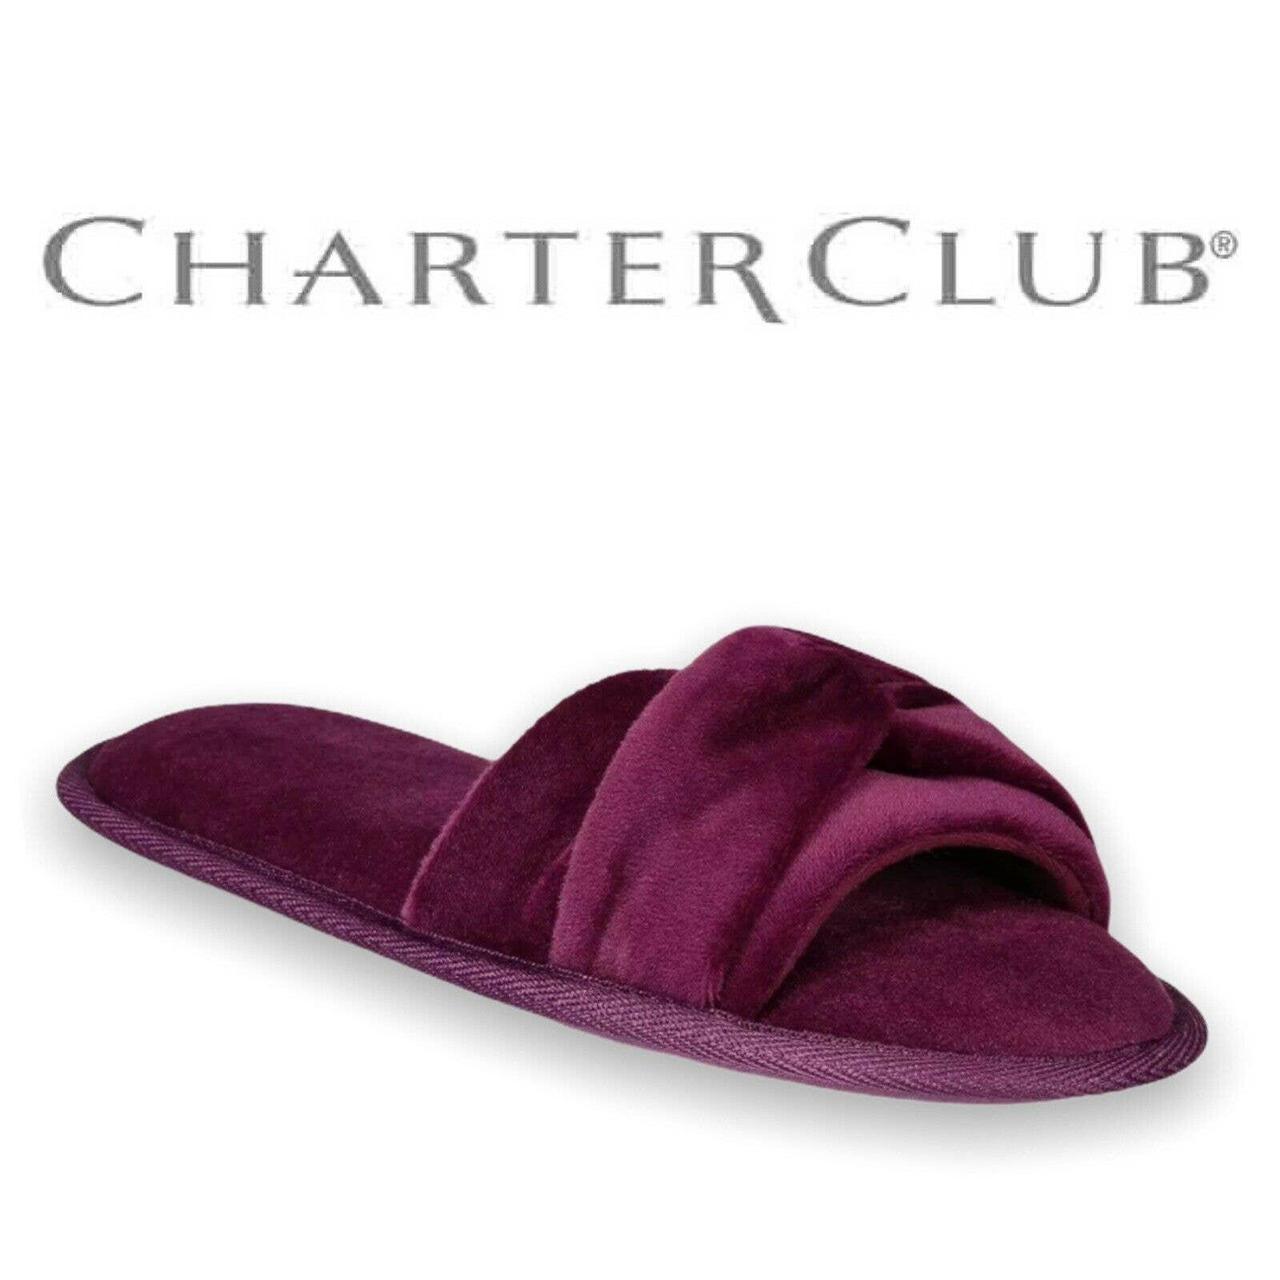 Charter Club Women's Purple Slippers